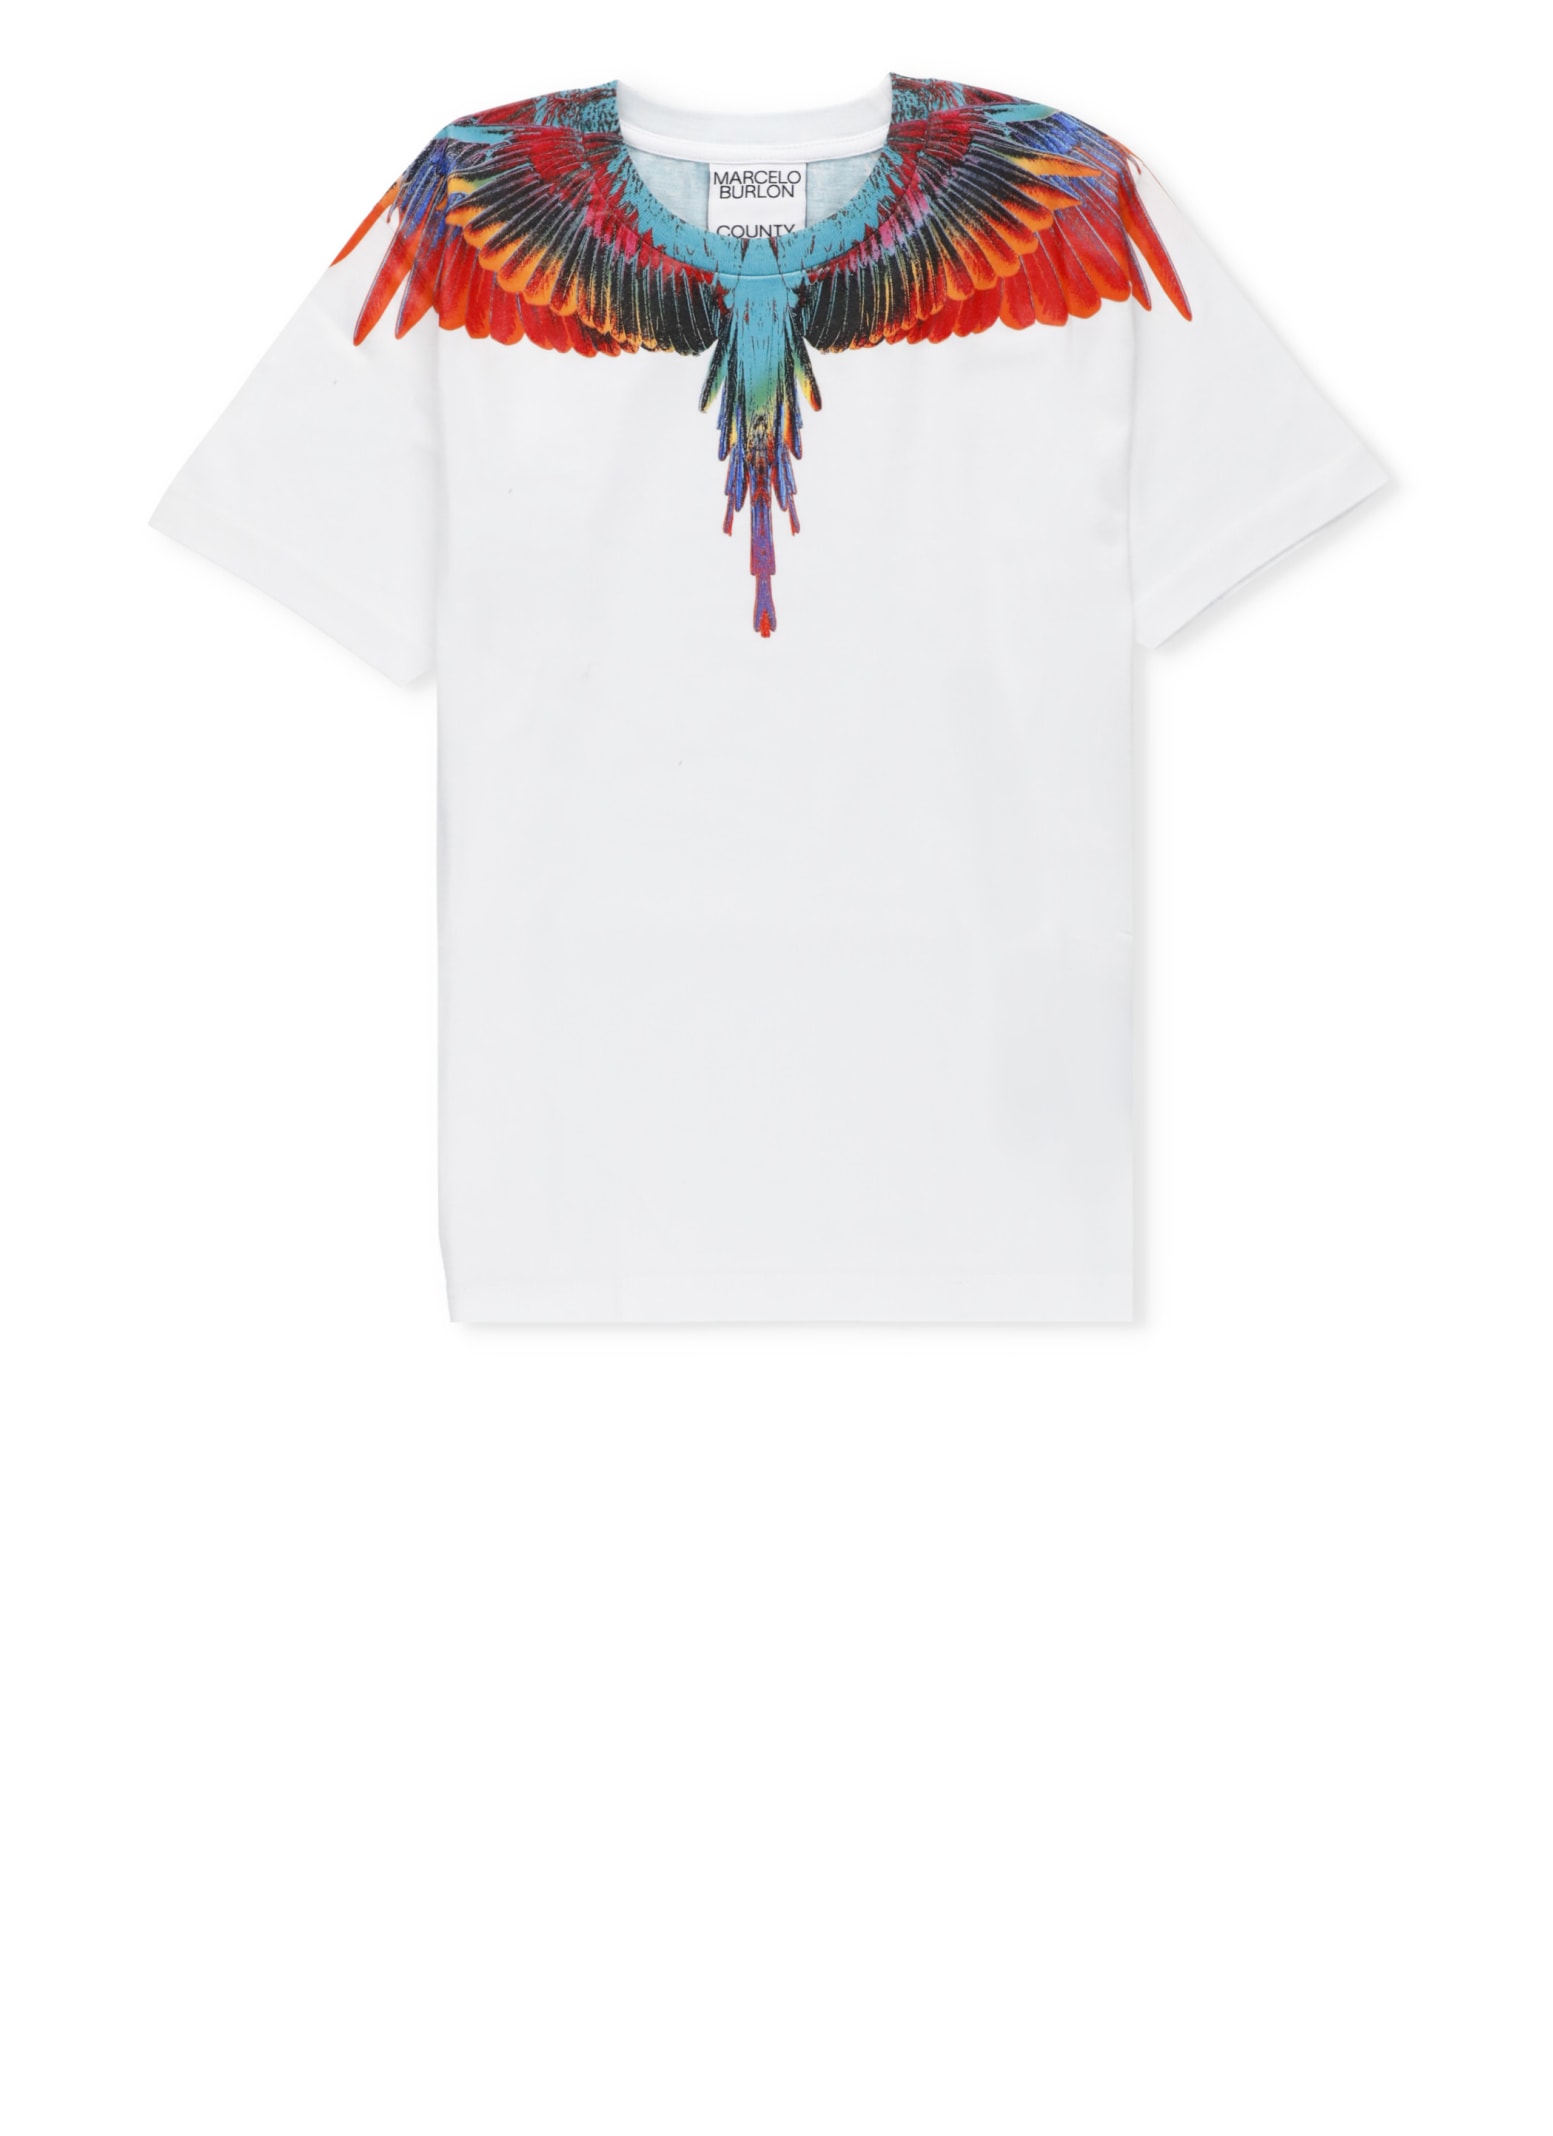 Marcelo Burlon Sunset Wings T-shirt